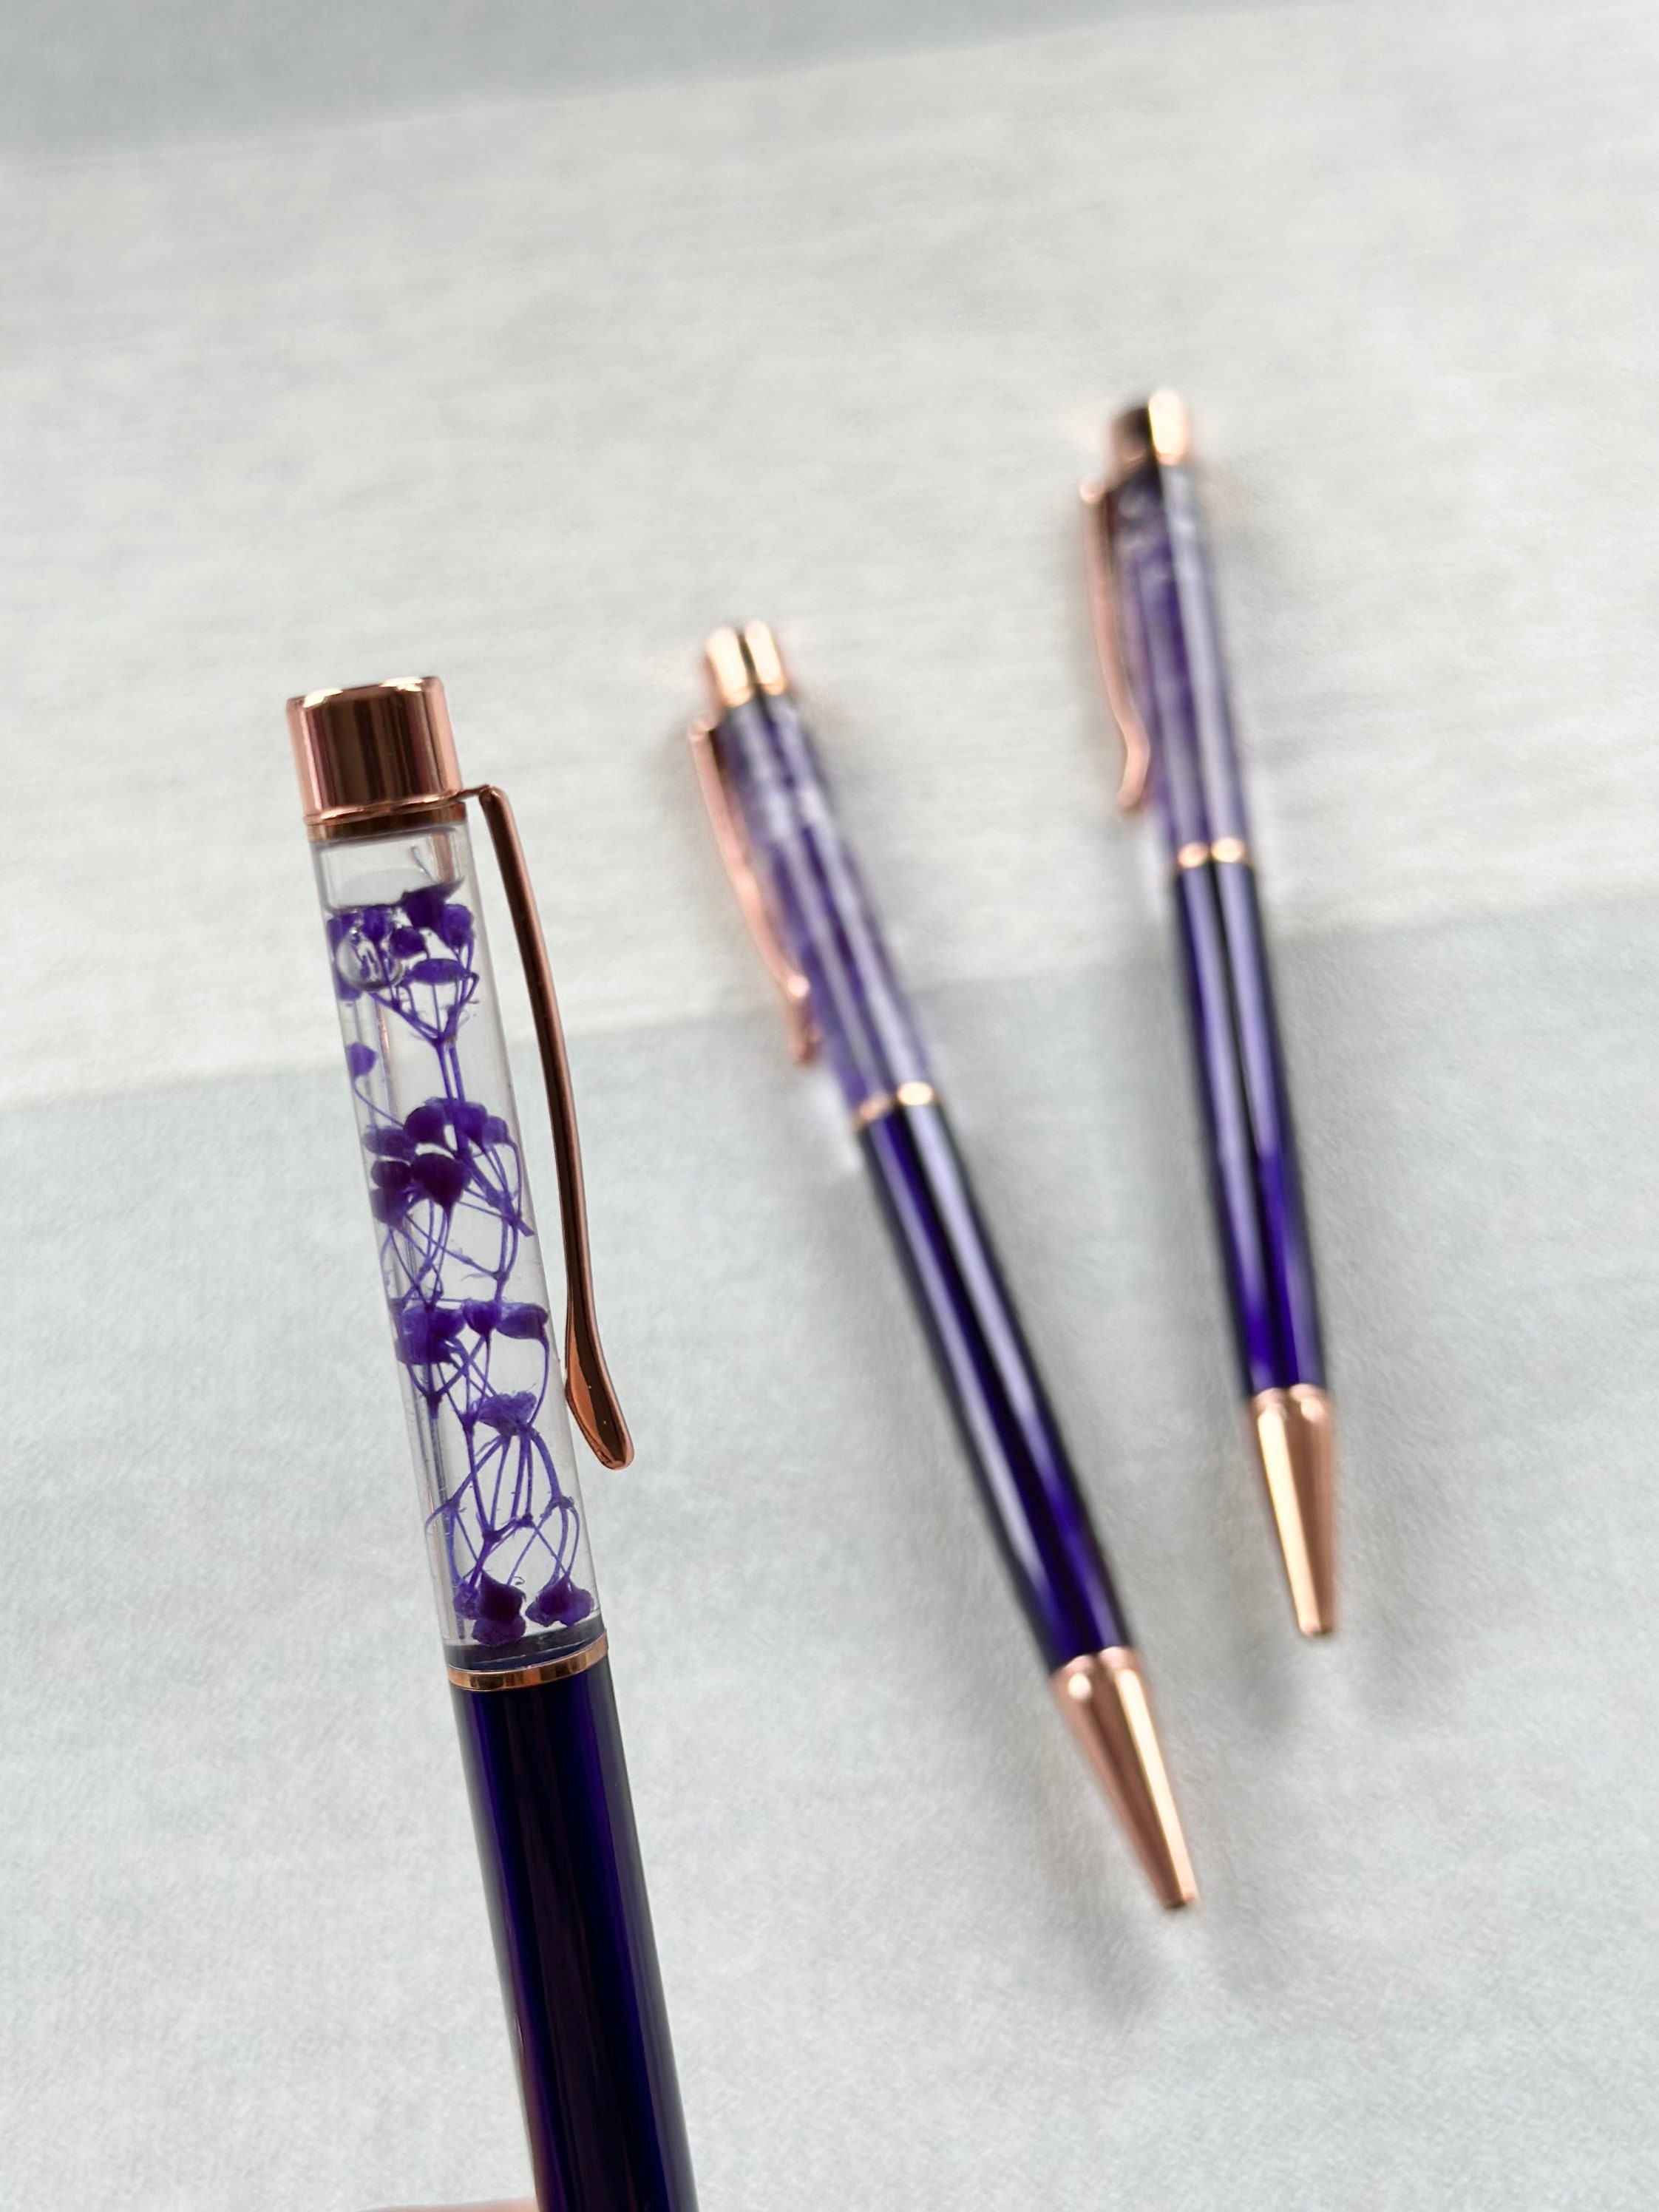 Pack of 6 black Fine-liners Journaling Handwriting School Work Pens pink,  Blue or Purple Set 